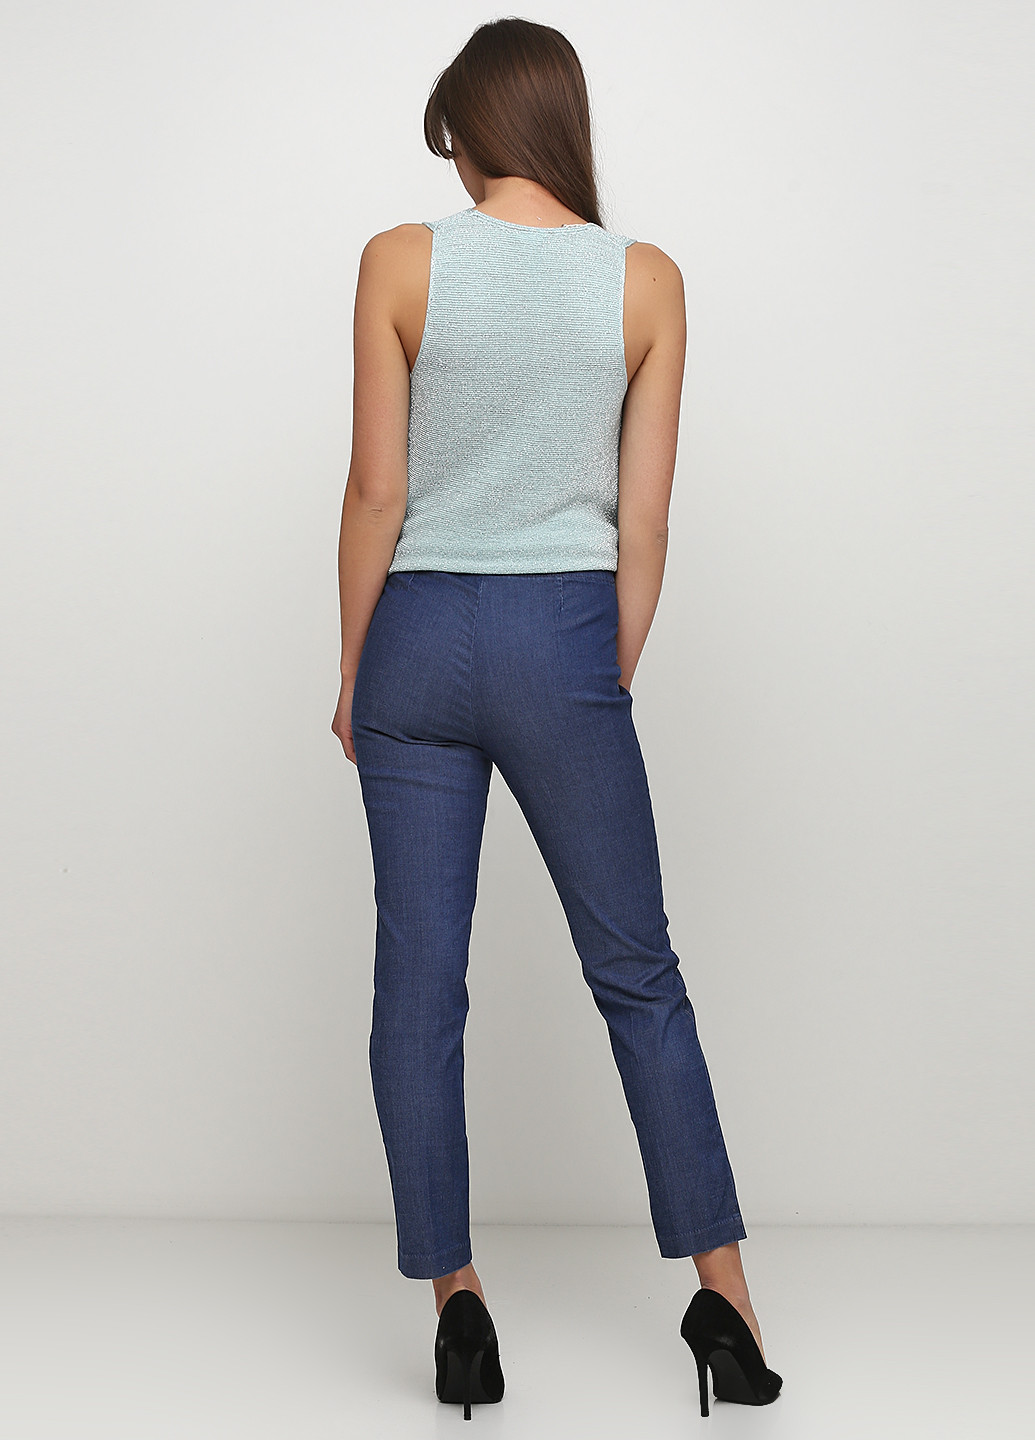 Синие демисезонные прямые джинсы United Colors of Benetton